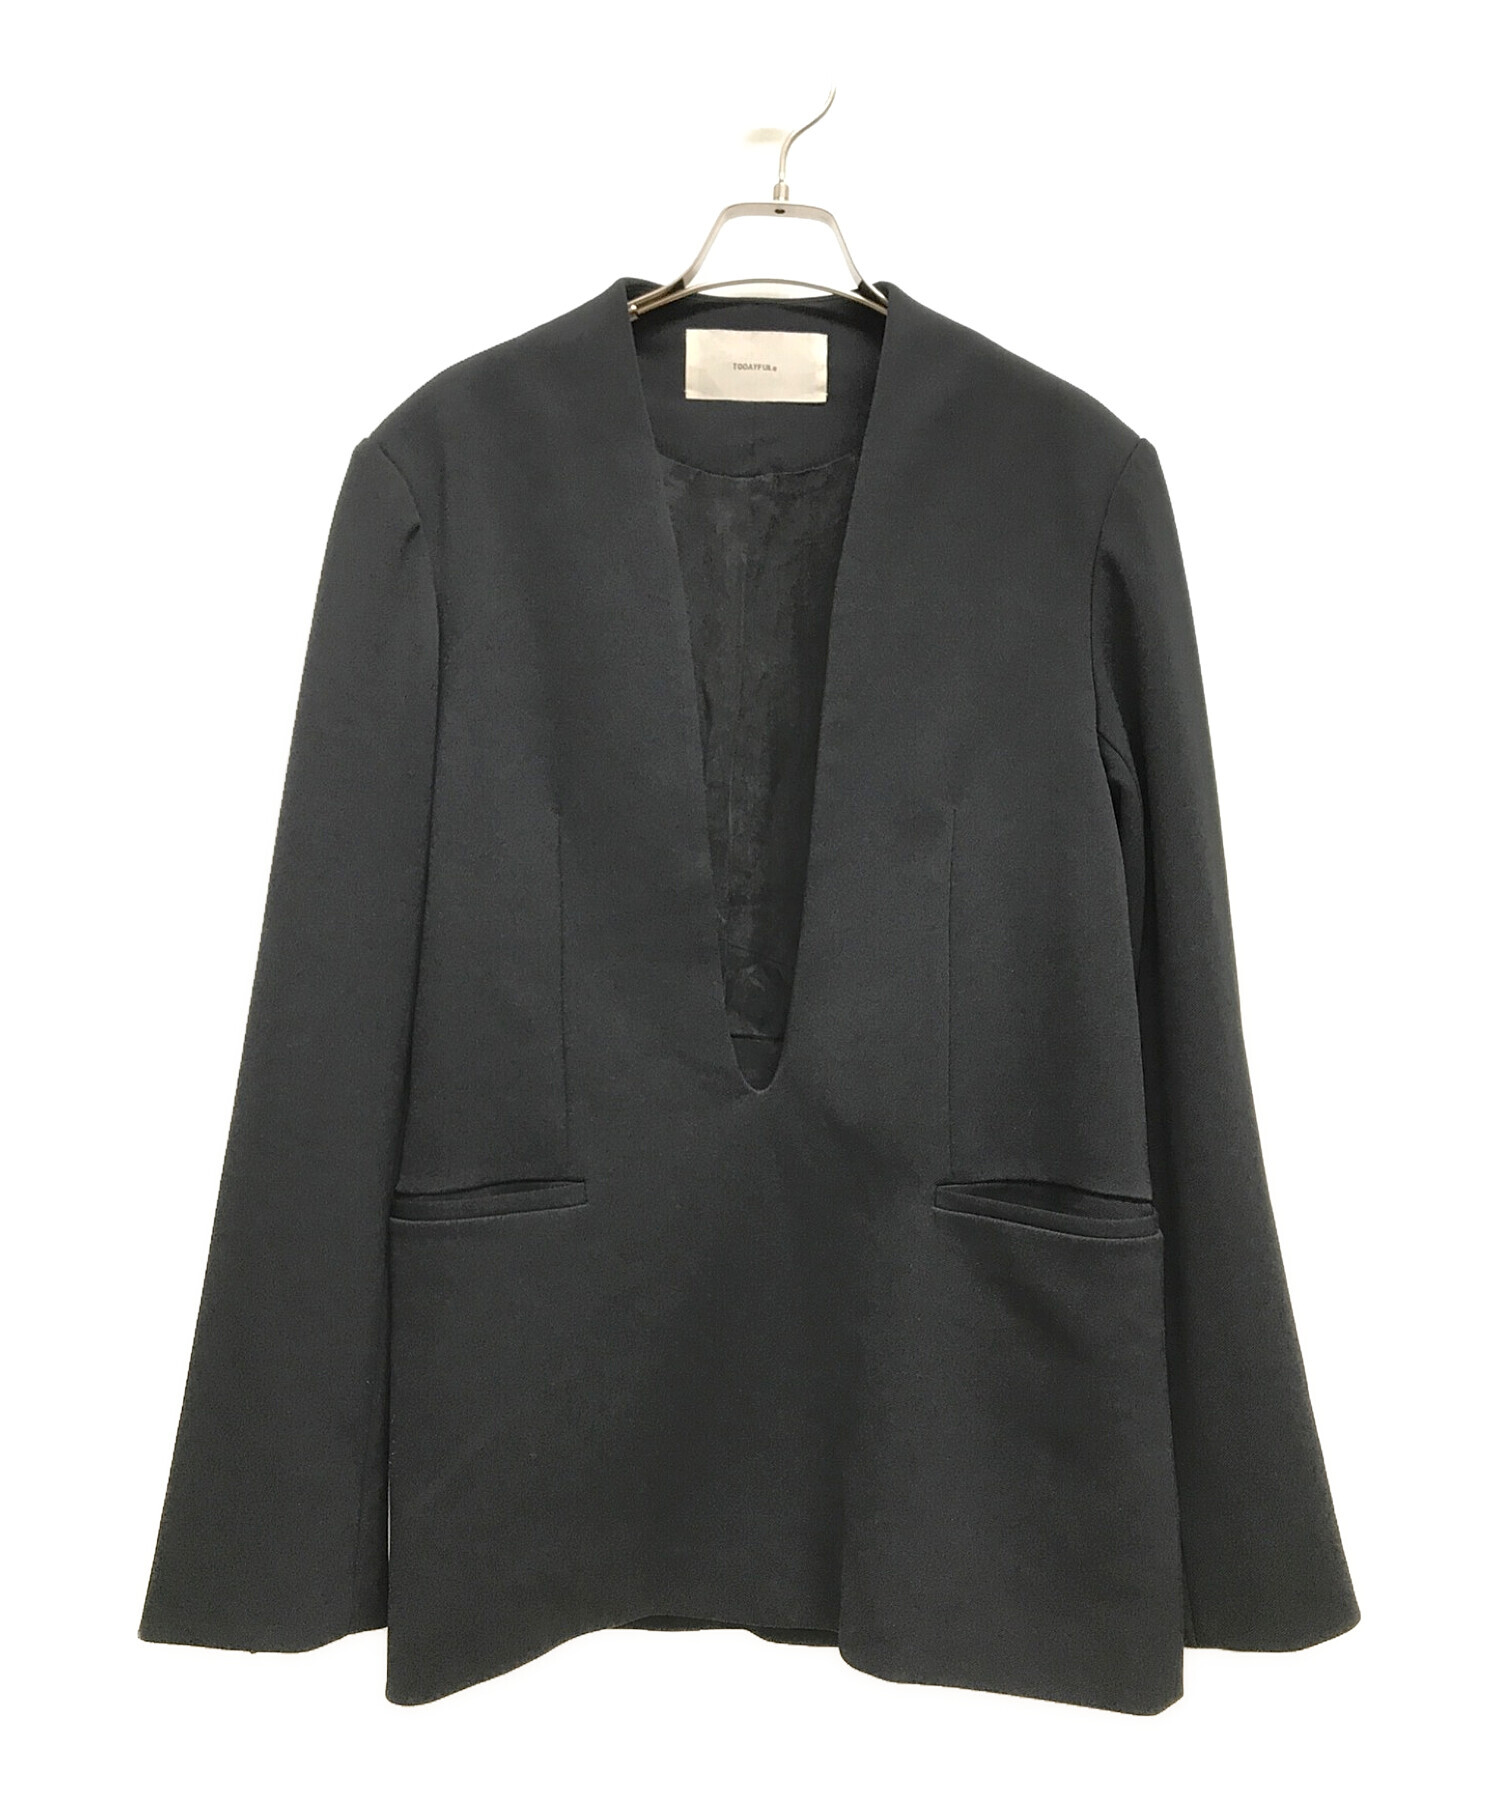 TODAYFUL (トゥデイフル) Uneck Pullover Jacket ブラック サイズ:38 未使用品